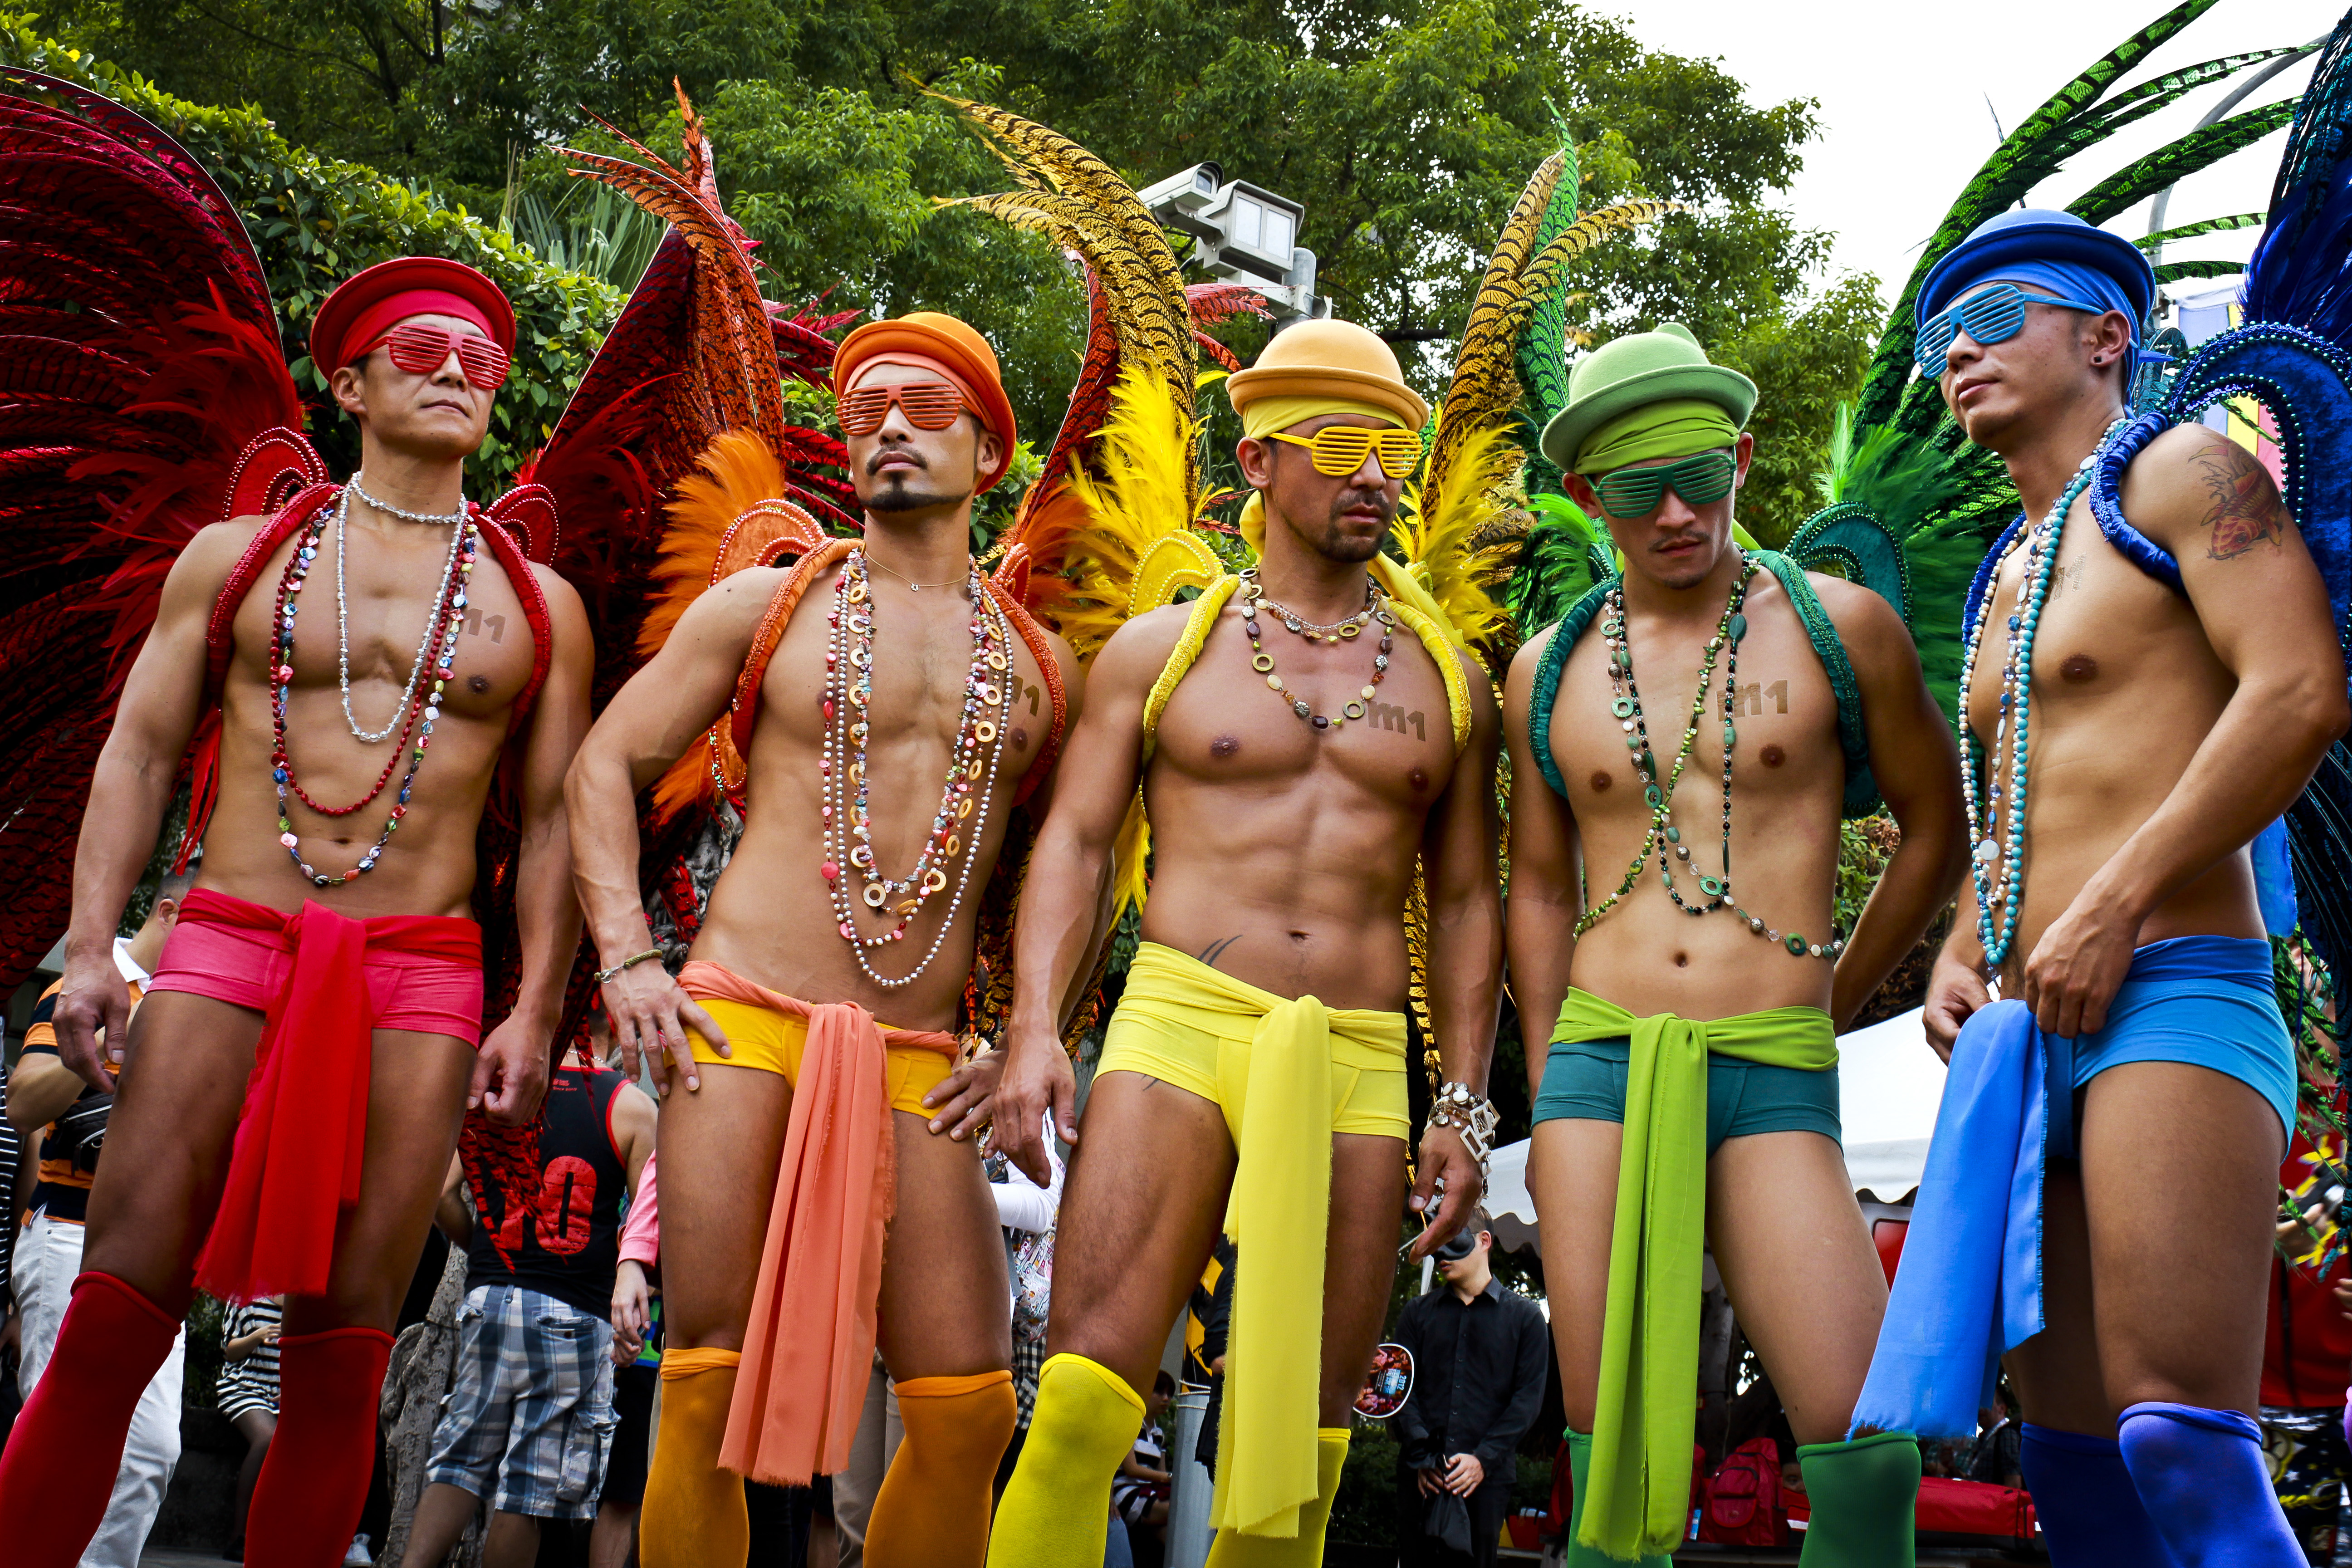 gay parade Pictures pride